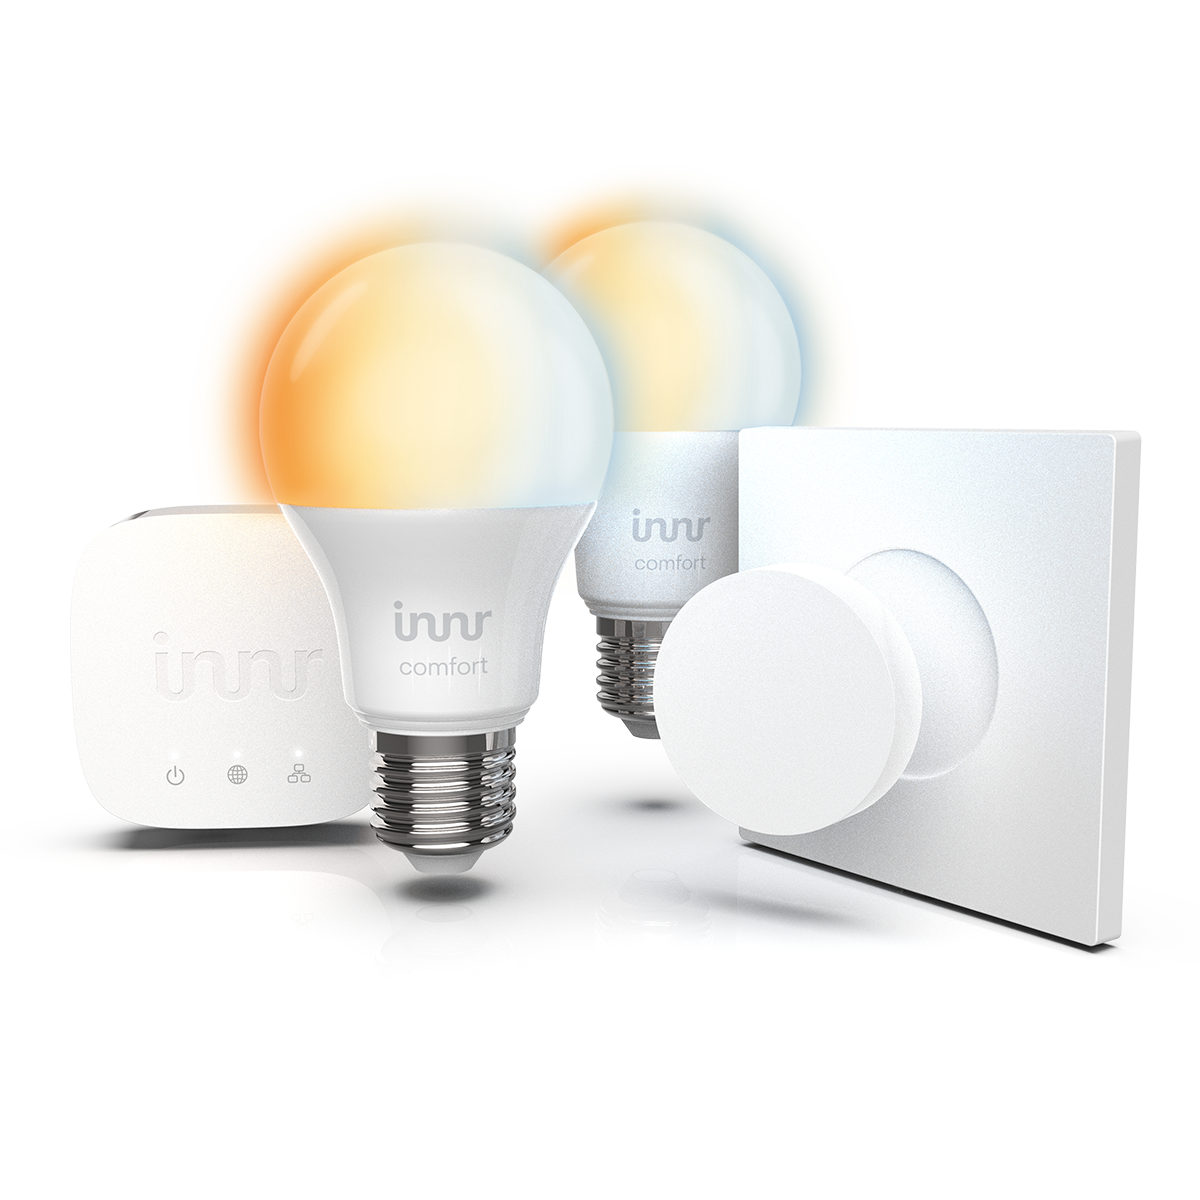 INNR Starter Kit E27 Komfort Lampe LED SK & Birne home equipment automation Hub, Smart 279 Komfort 2x - Fernbedienung T-2